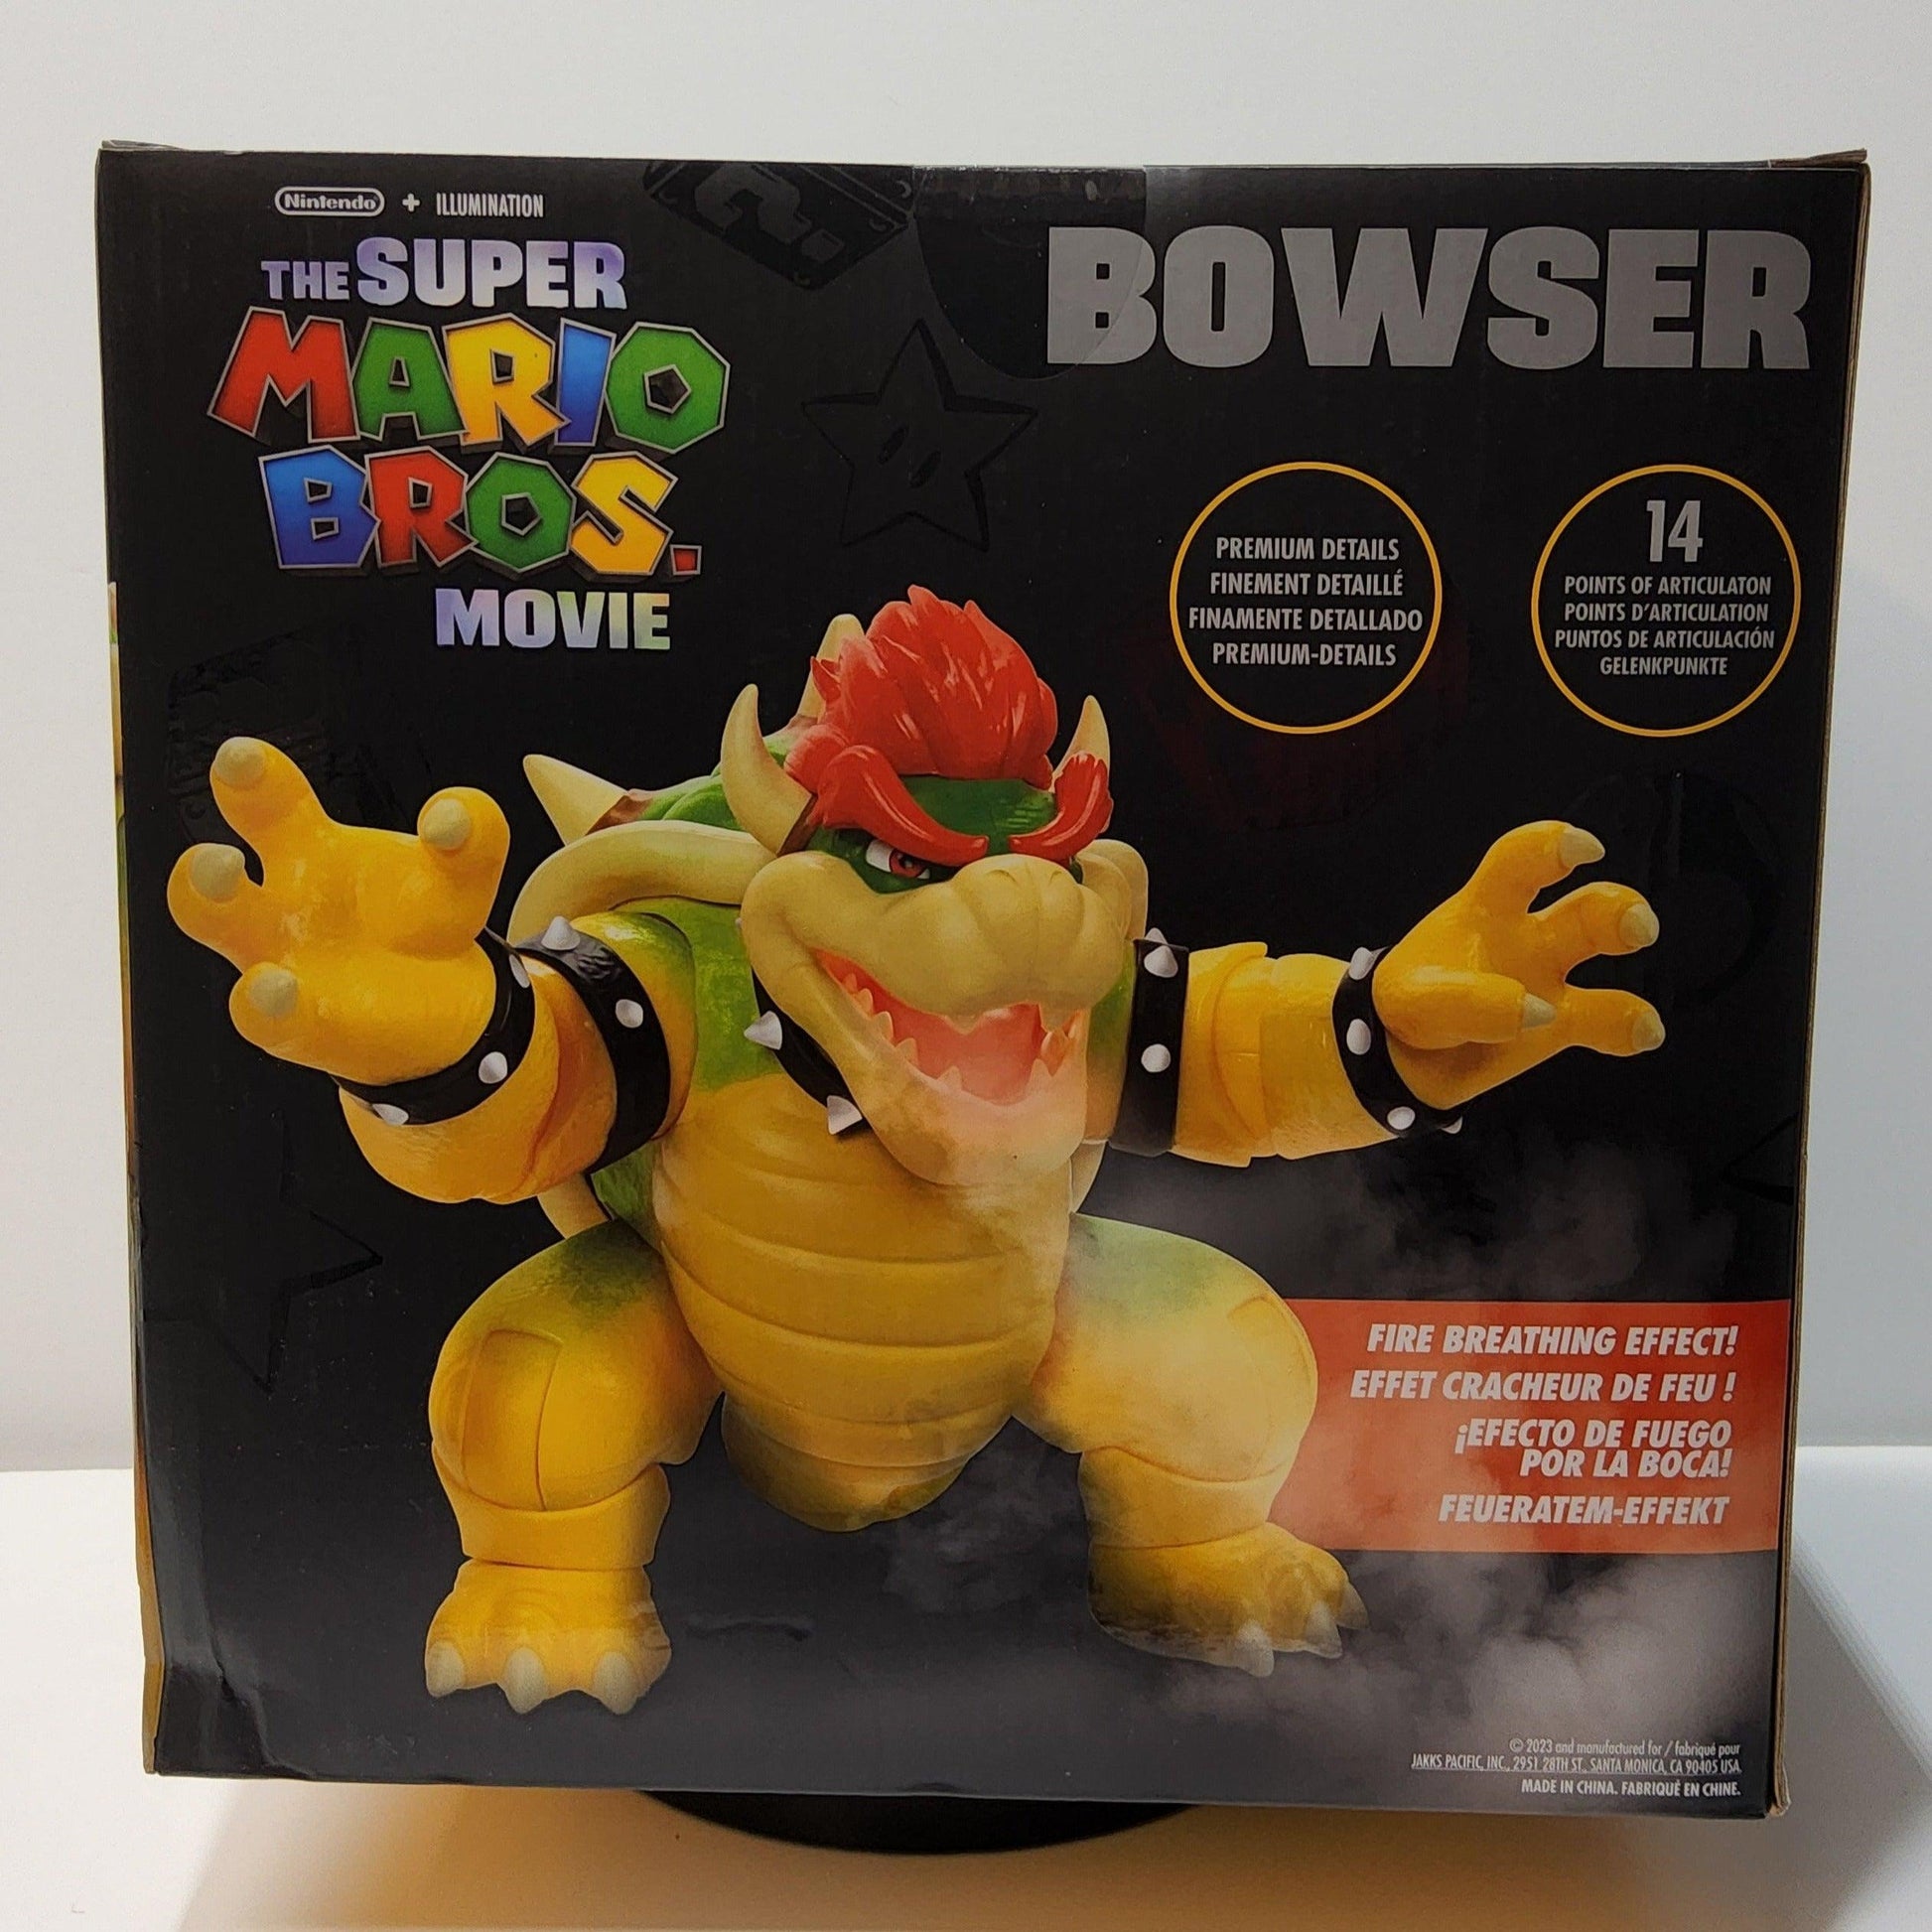 Jakks Pacific Super Mario 2.5 Bowser Jr. Bowsy Mini Action Figure –  Logan's Toy Chest